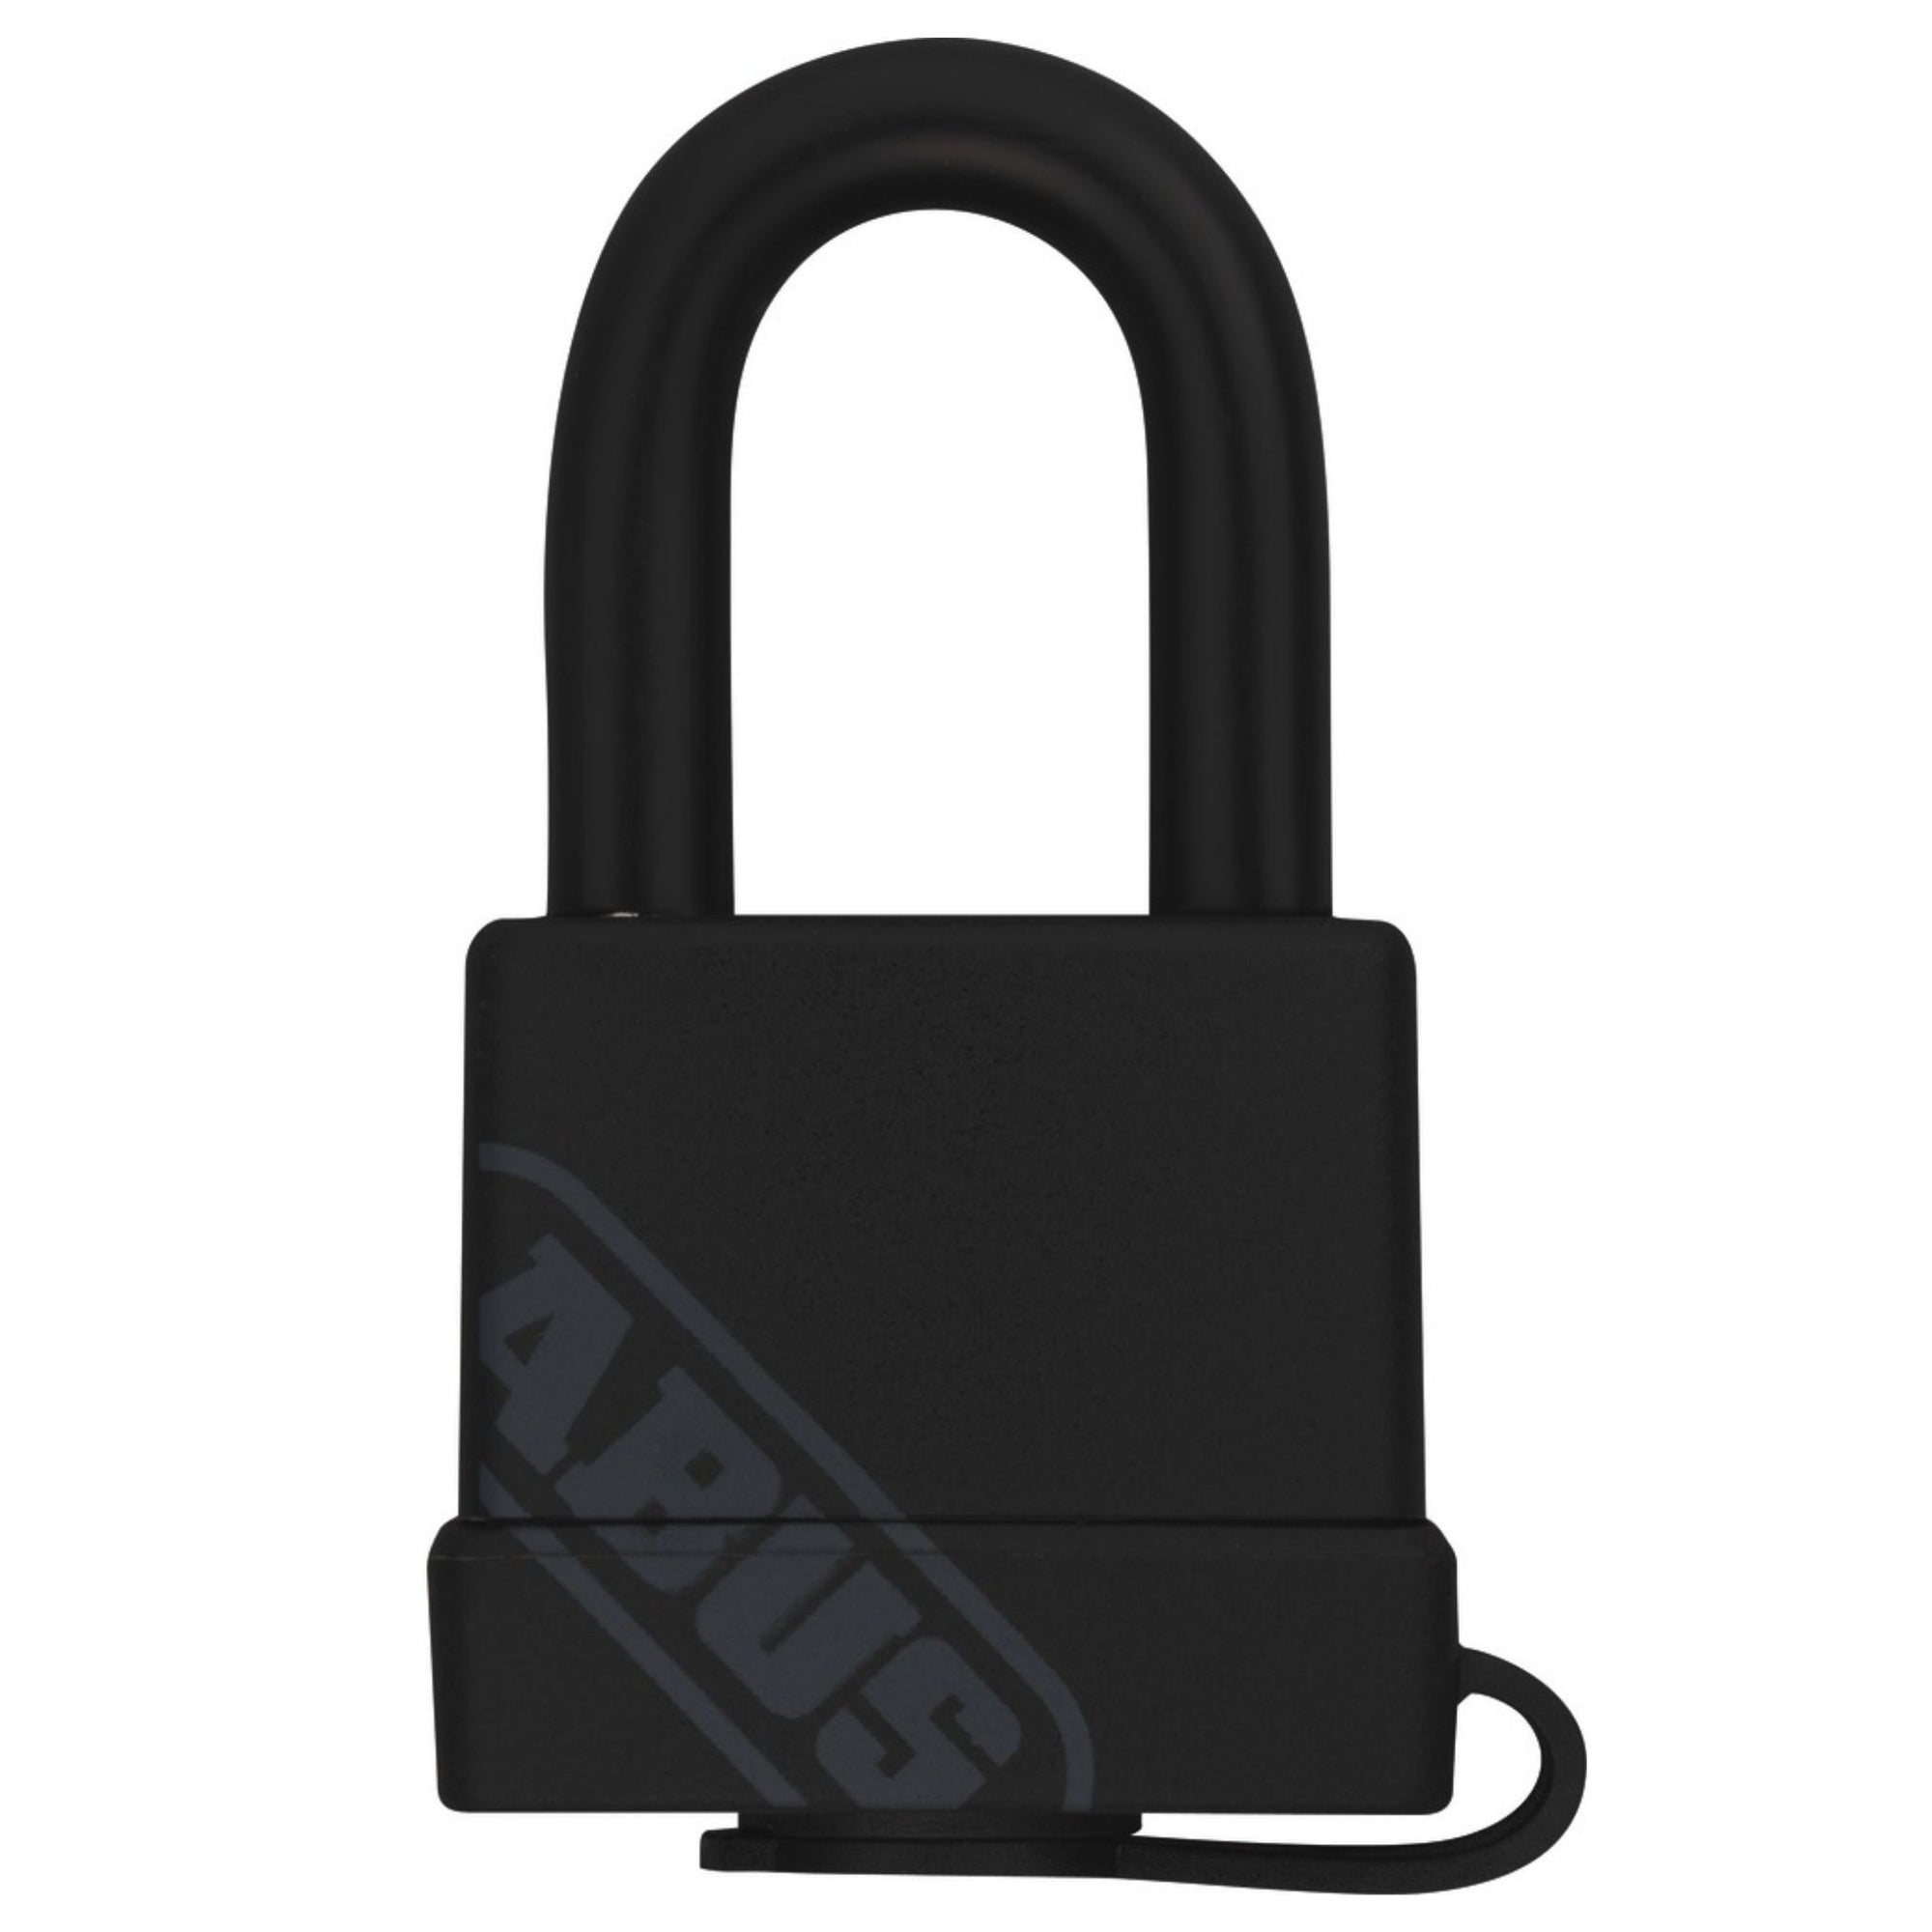 Abus 70/35 Weatherproof Brass Series Locks Keyed Alike (70/35 KA) & KD Padlocks - The Lock Source